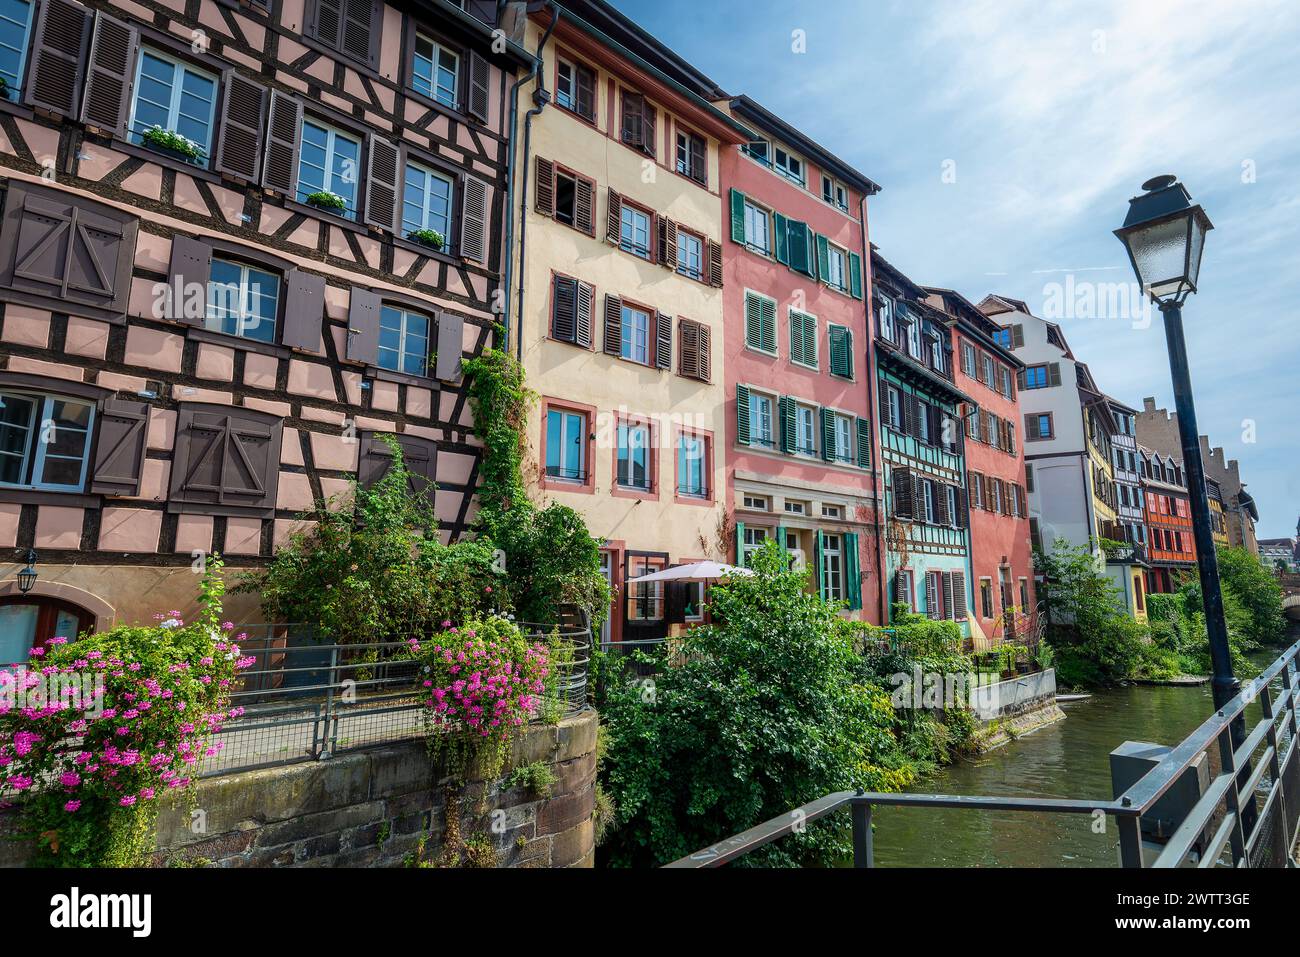 Farbenfrohe Häuser in der Petite France, einem kleinen Viertel Venedig in Straßburg, Frankreich Stockfoto